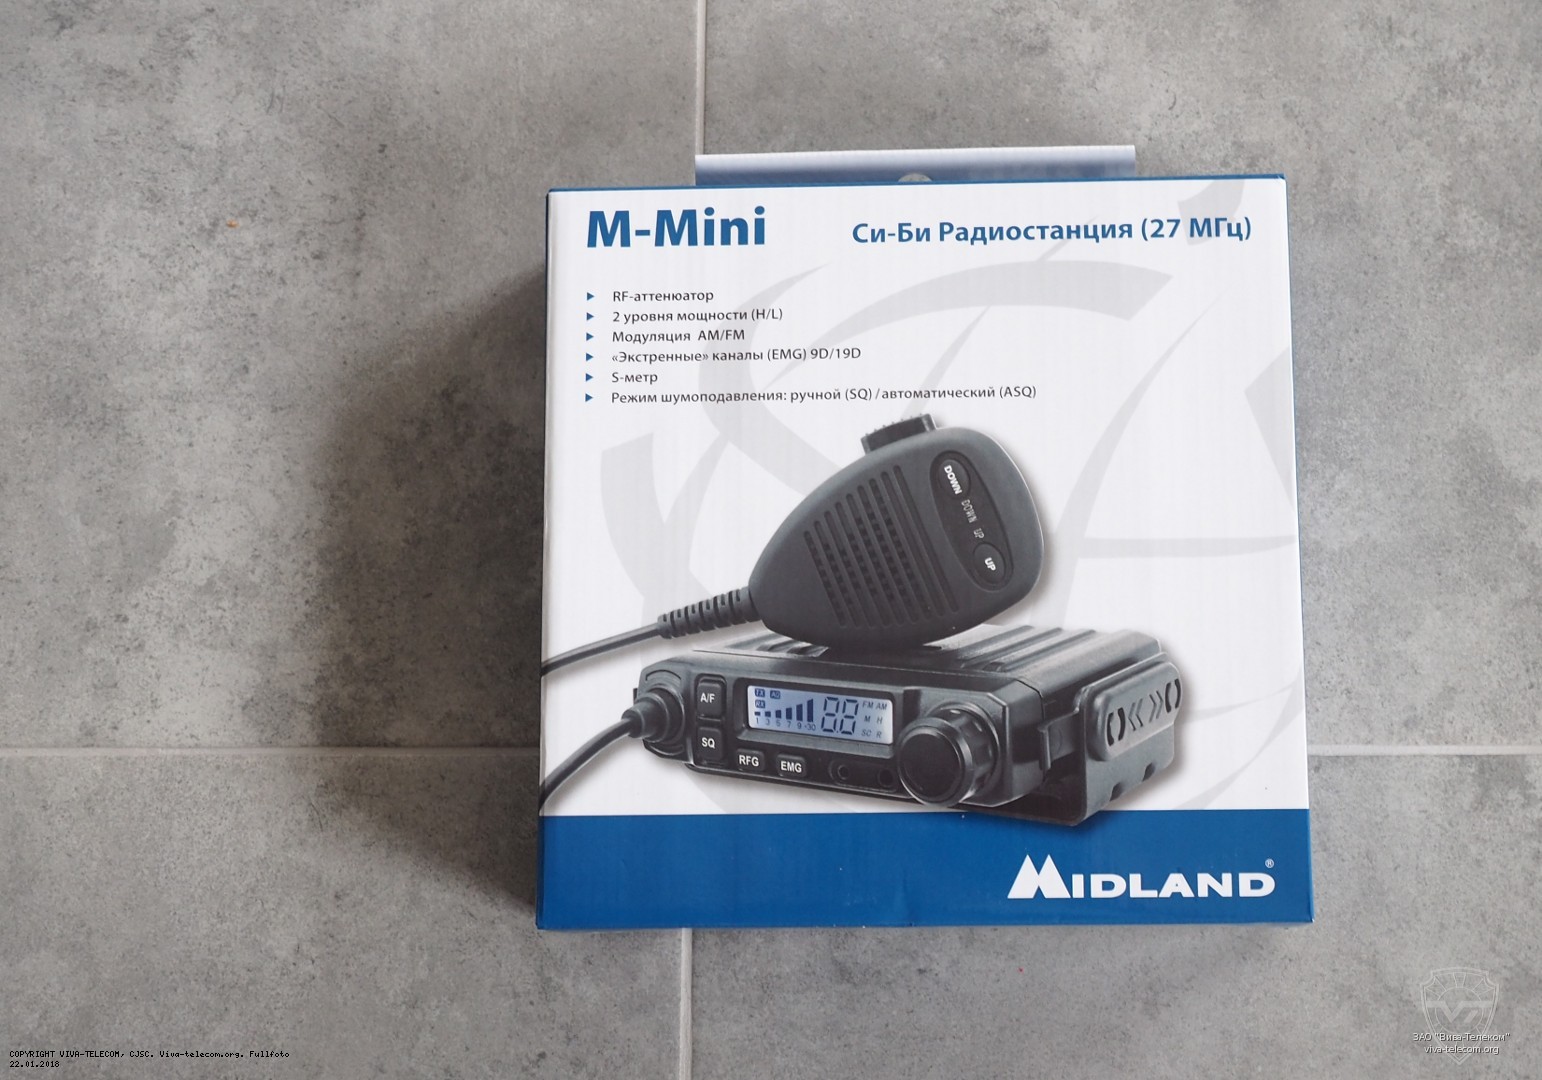    Midland M-Mini